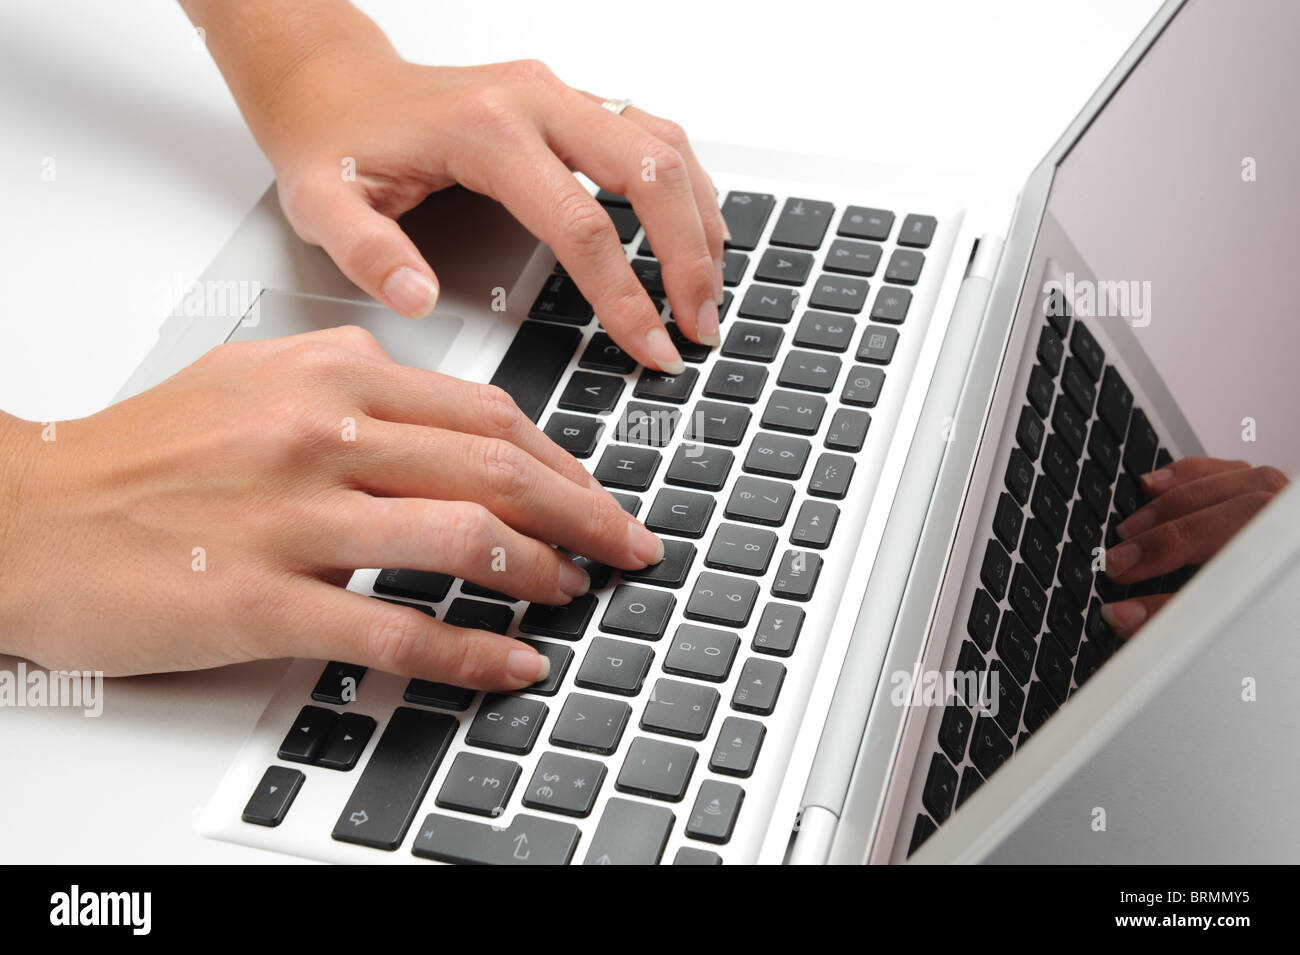 Человек печатает на клавиатуре